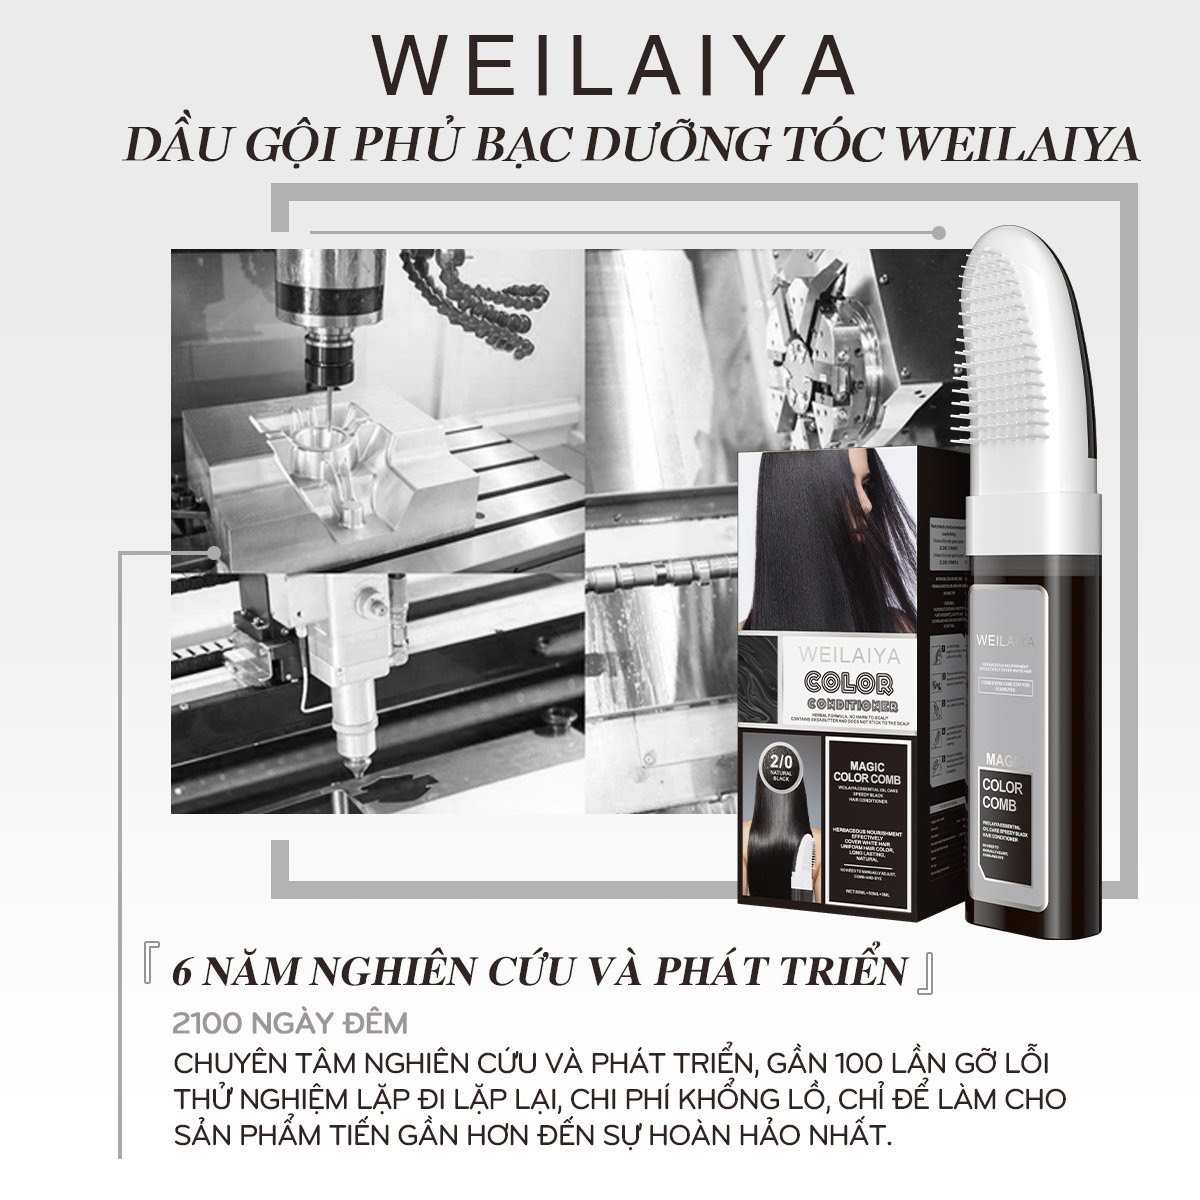 Dầu gội phủ bạc Weilaiya chính hãng giá ưu đãi tốt nhất